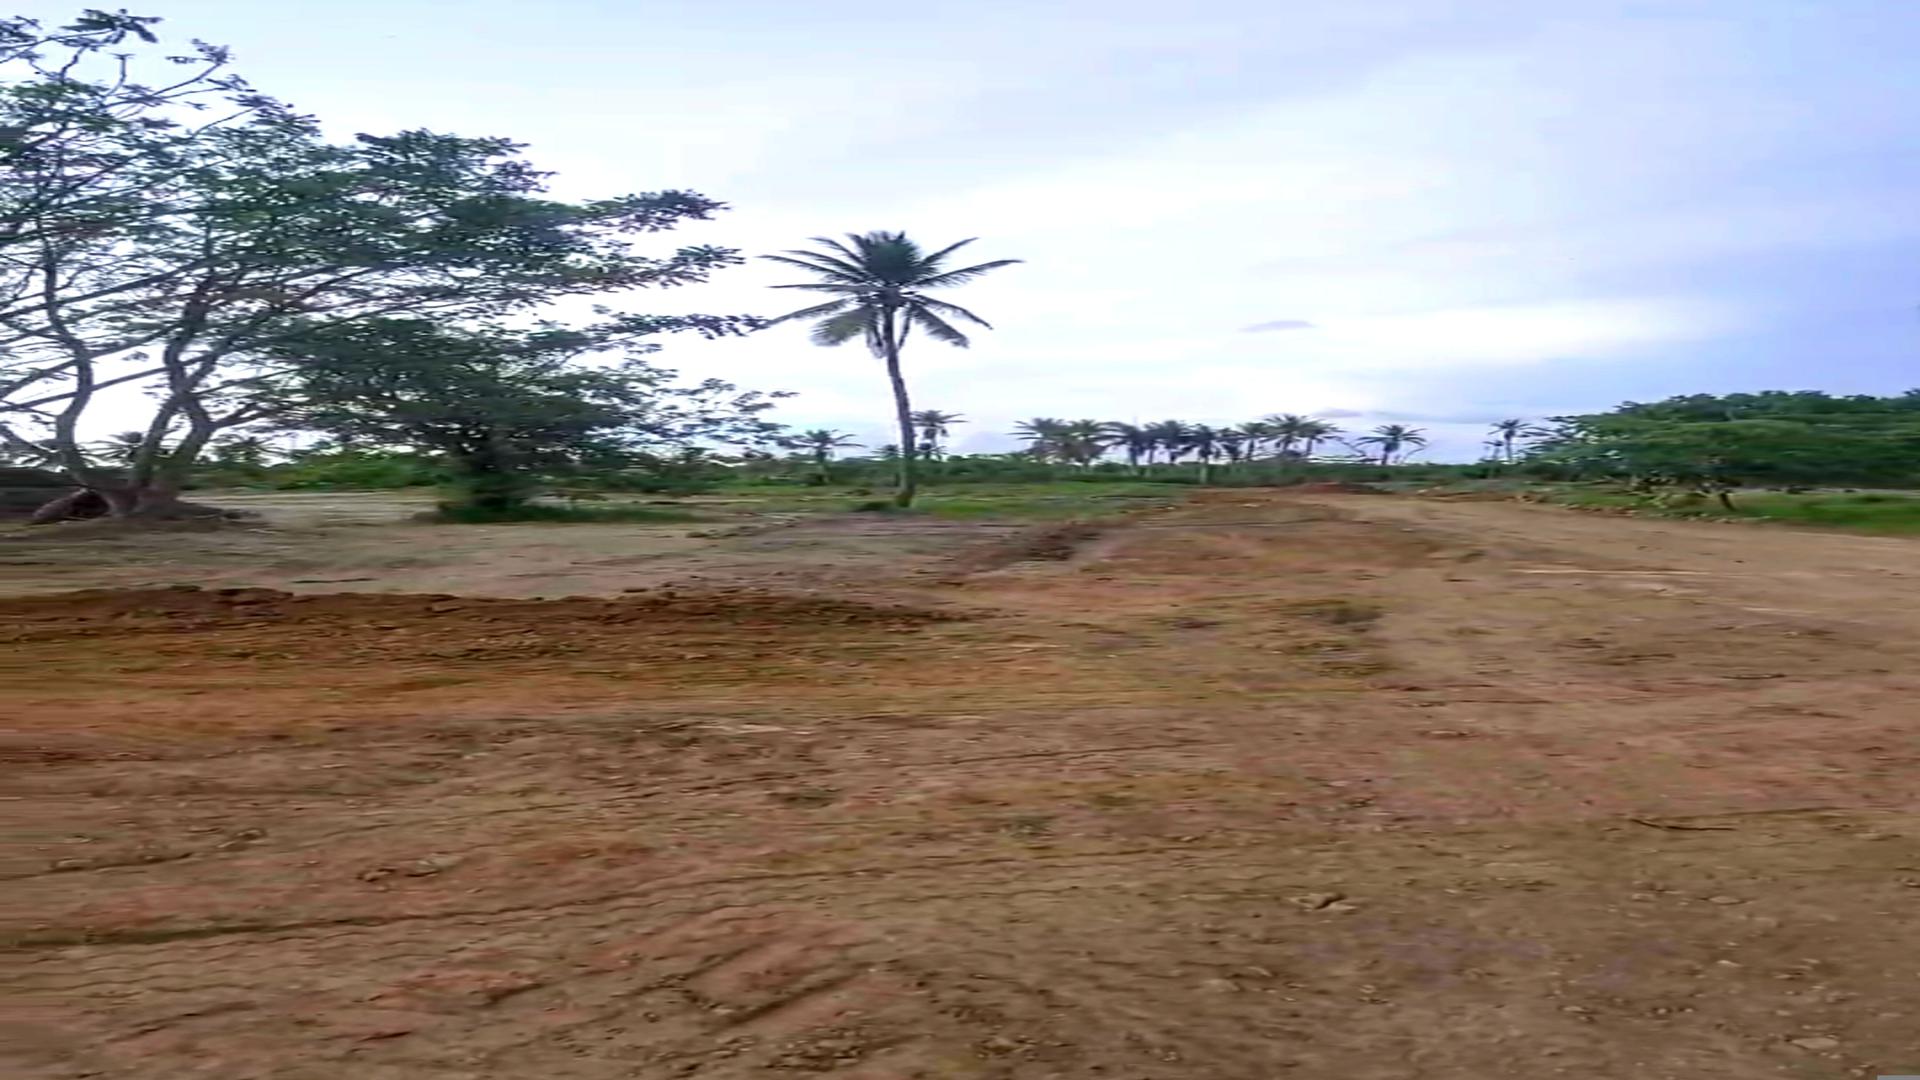 solares y terrenos - Terrenos en venta en Maimón cerca de playa 0